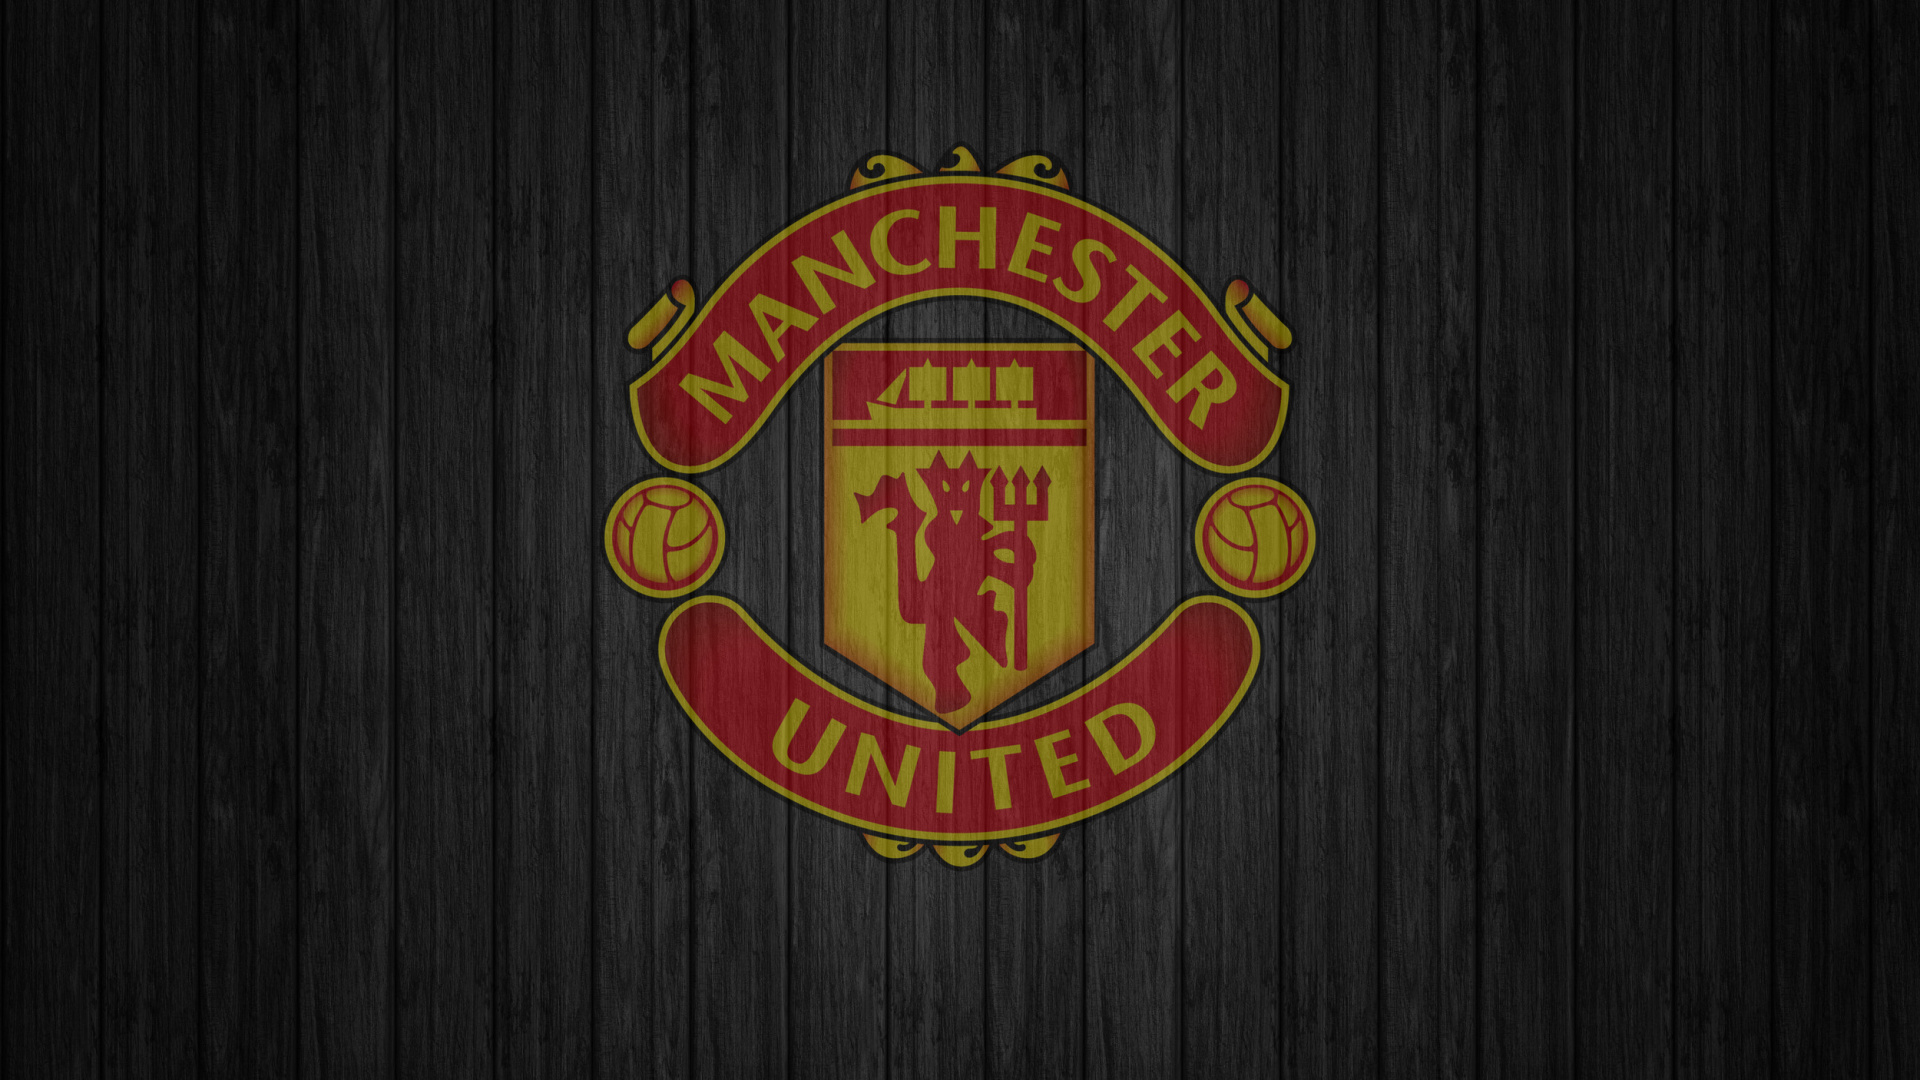 Manchester United, Firmenzeichen, Manchester United f c, Emblem, Crest. Wallpaper in 1920x1080 Resolution